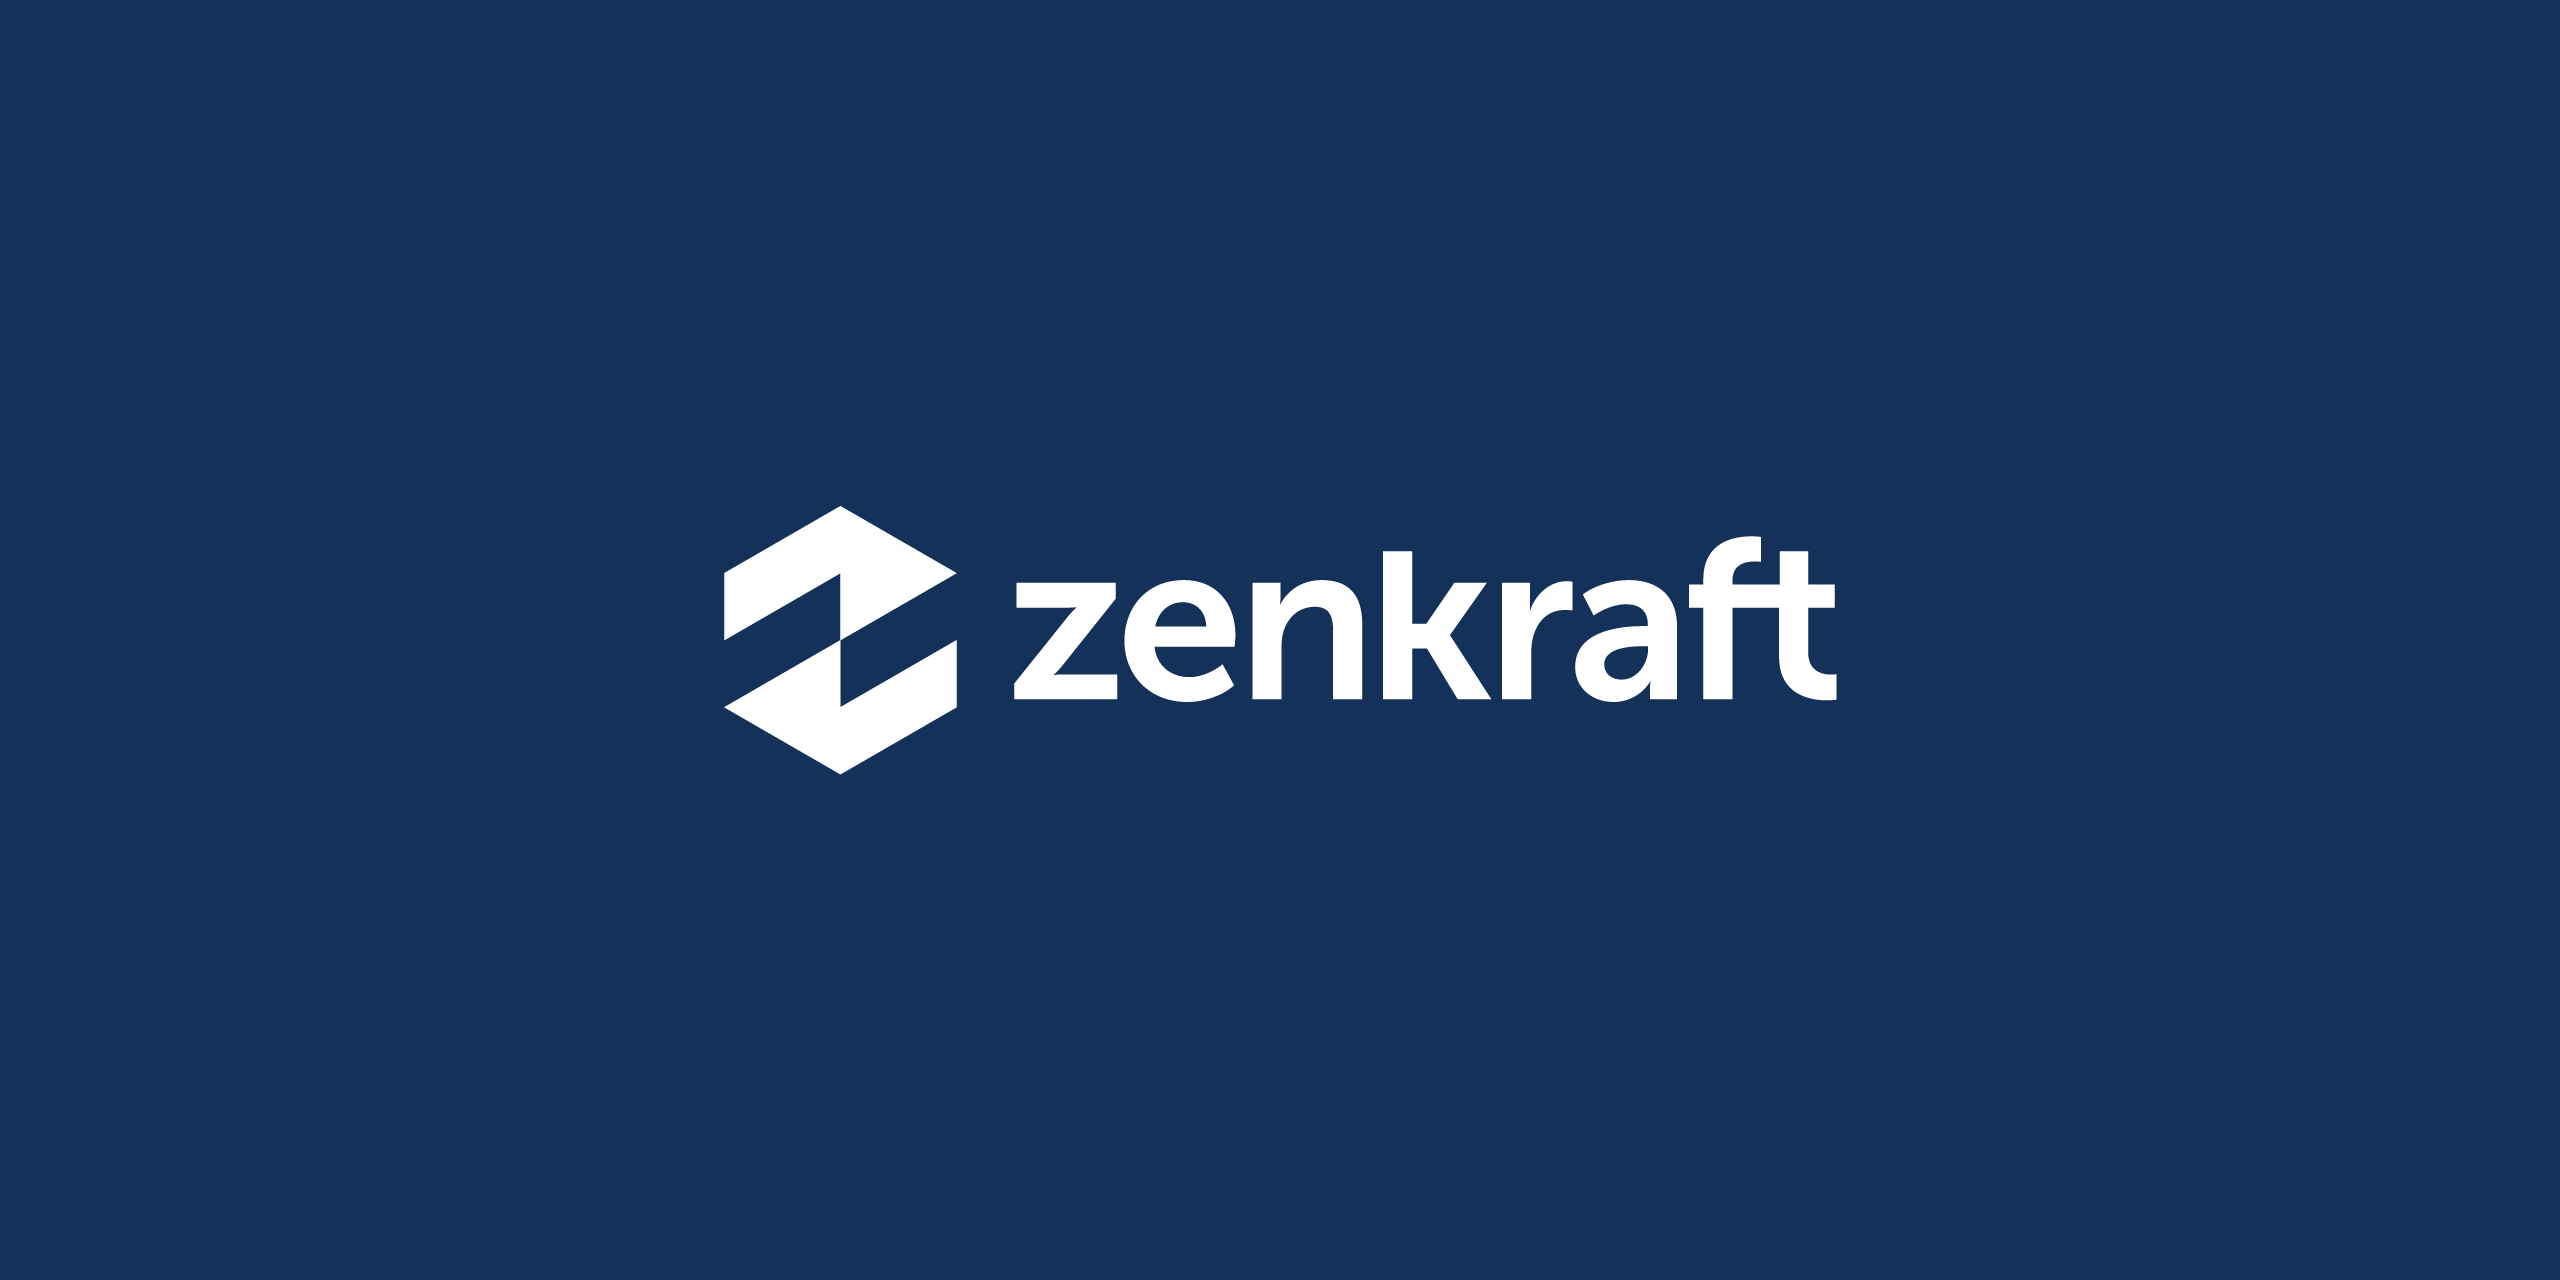 zenkraft_logo_for_dark_background_by_brandforma